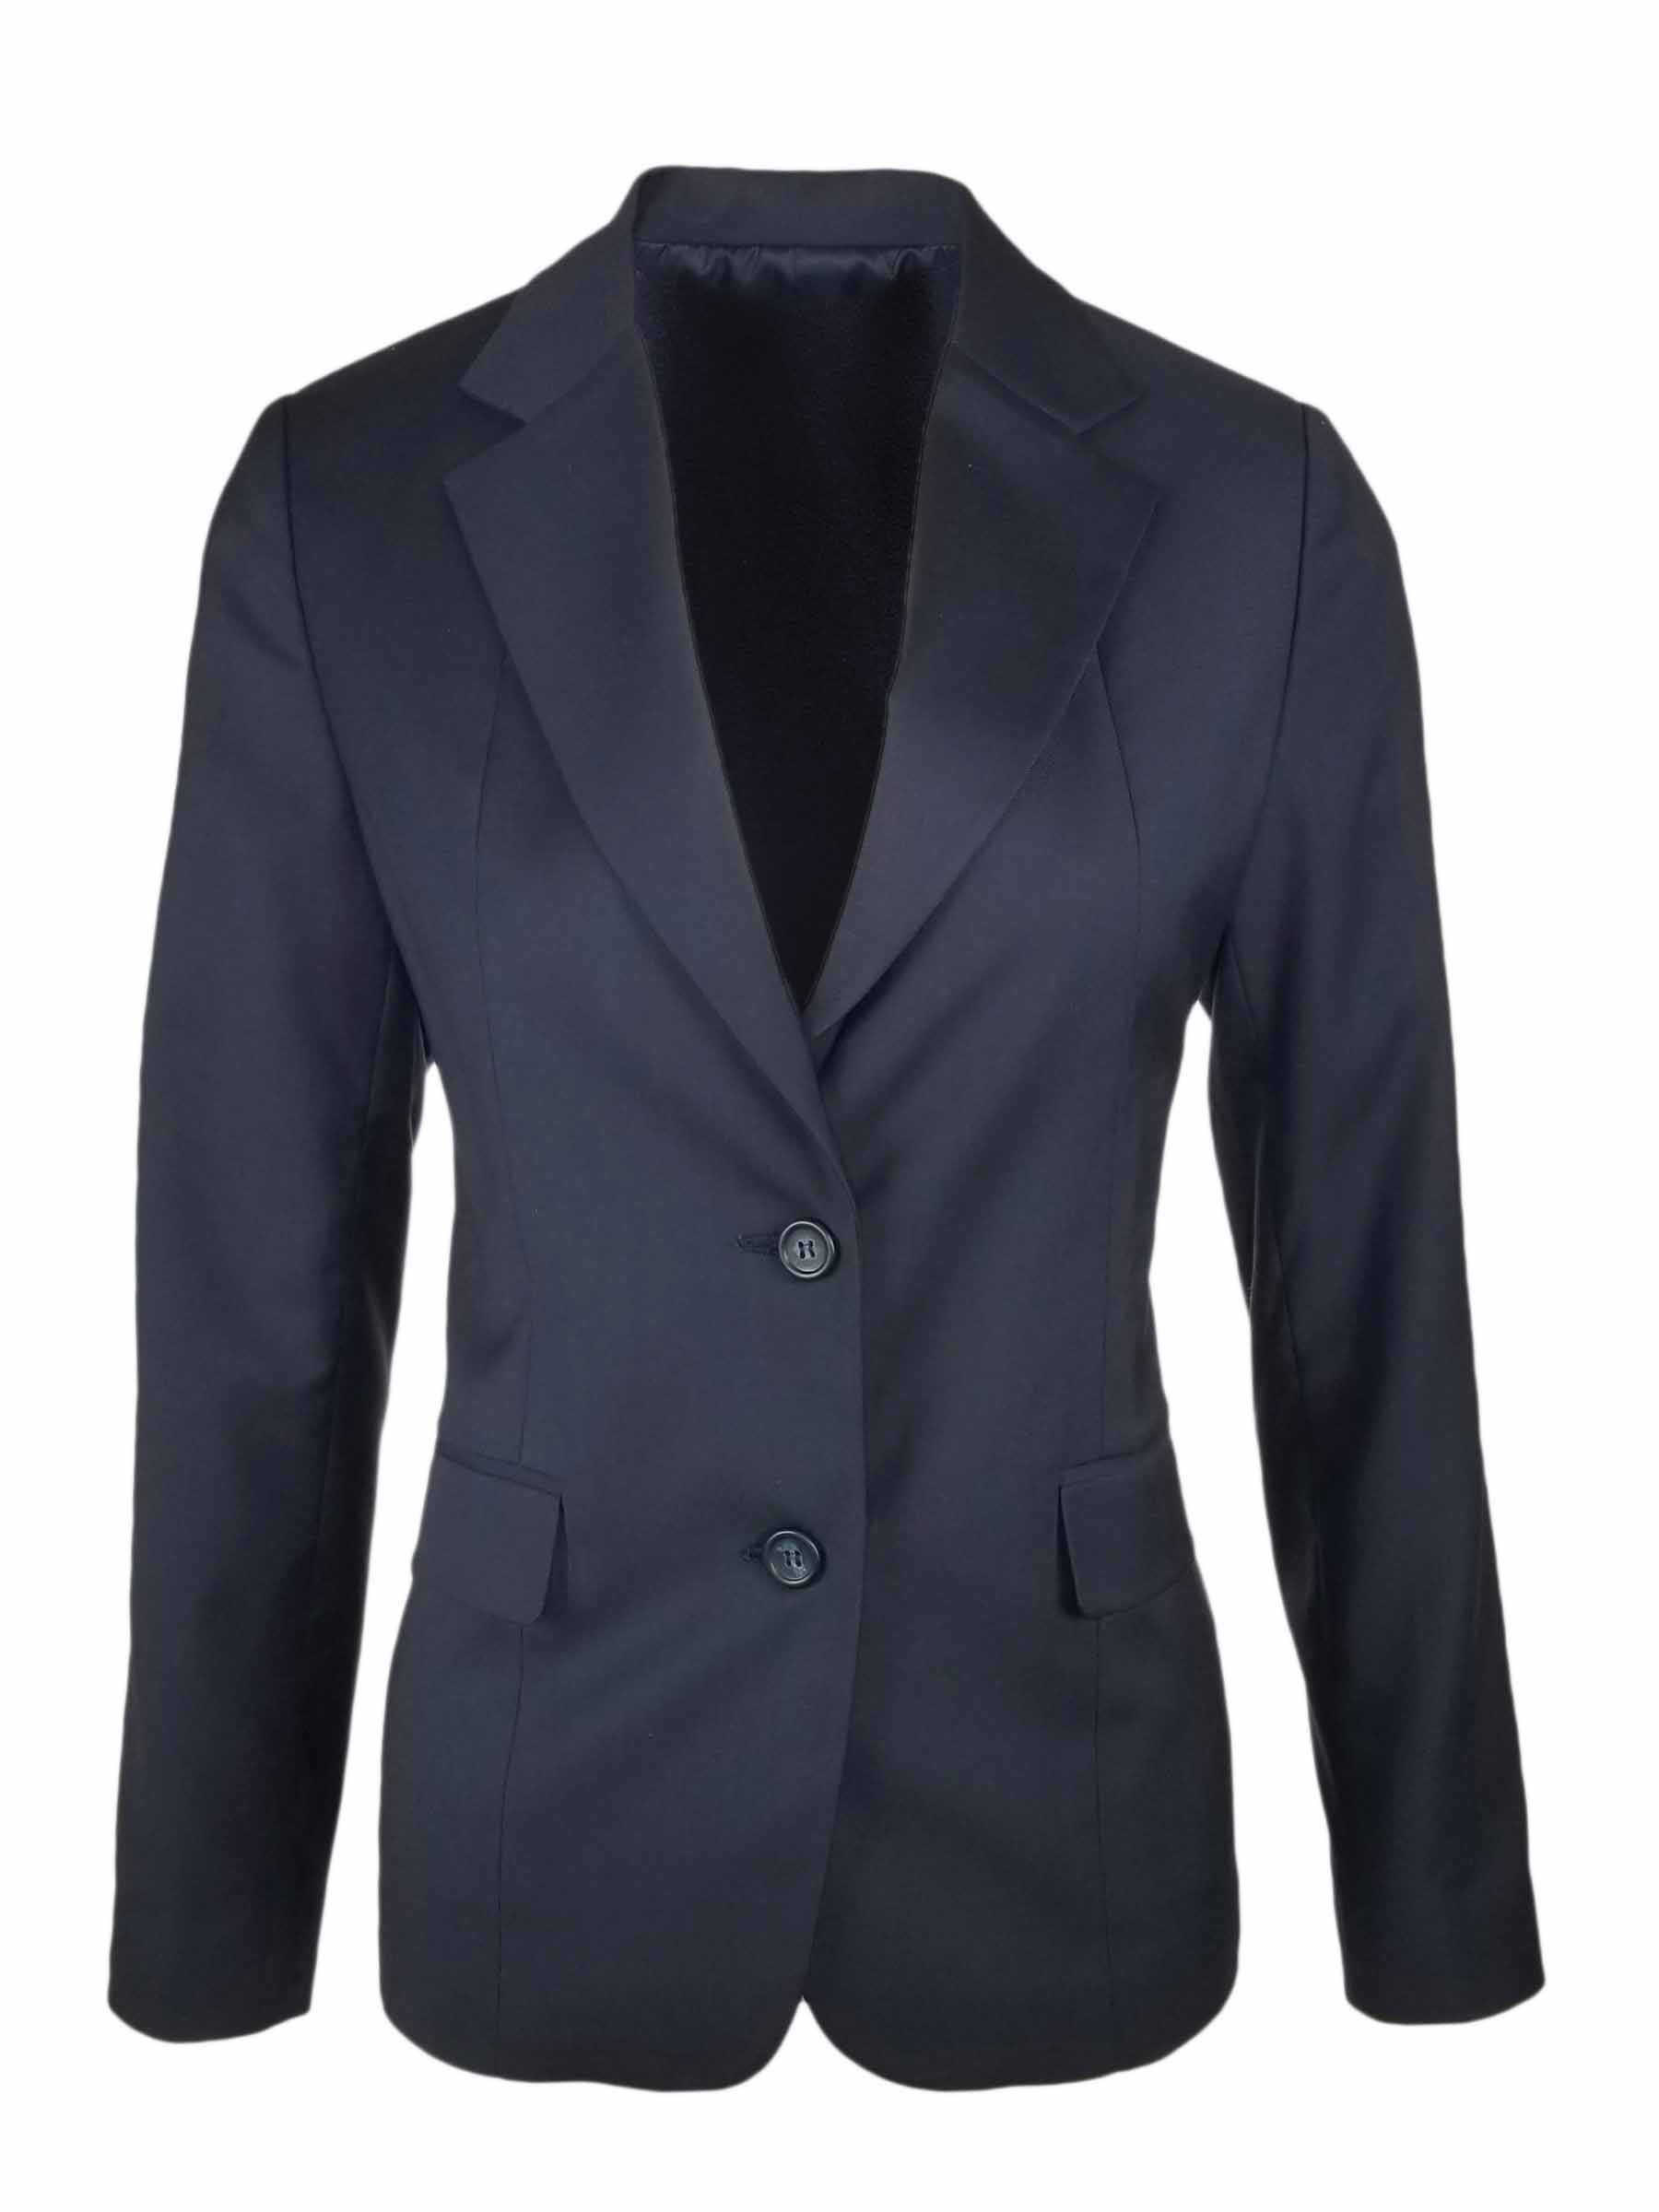 Women's 2 Button Wool Blend Jacket - Navy - Uniform Edit